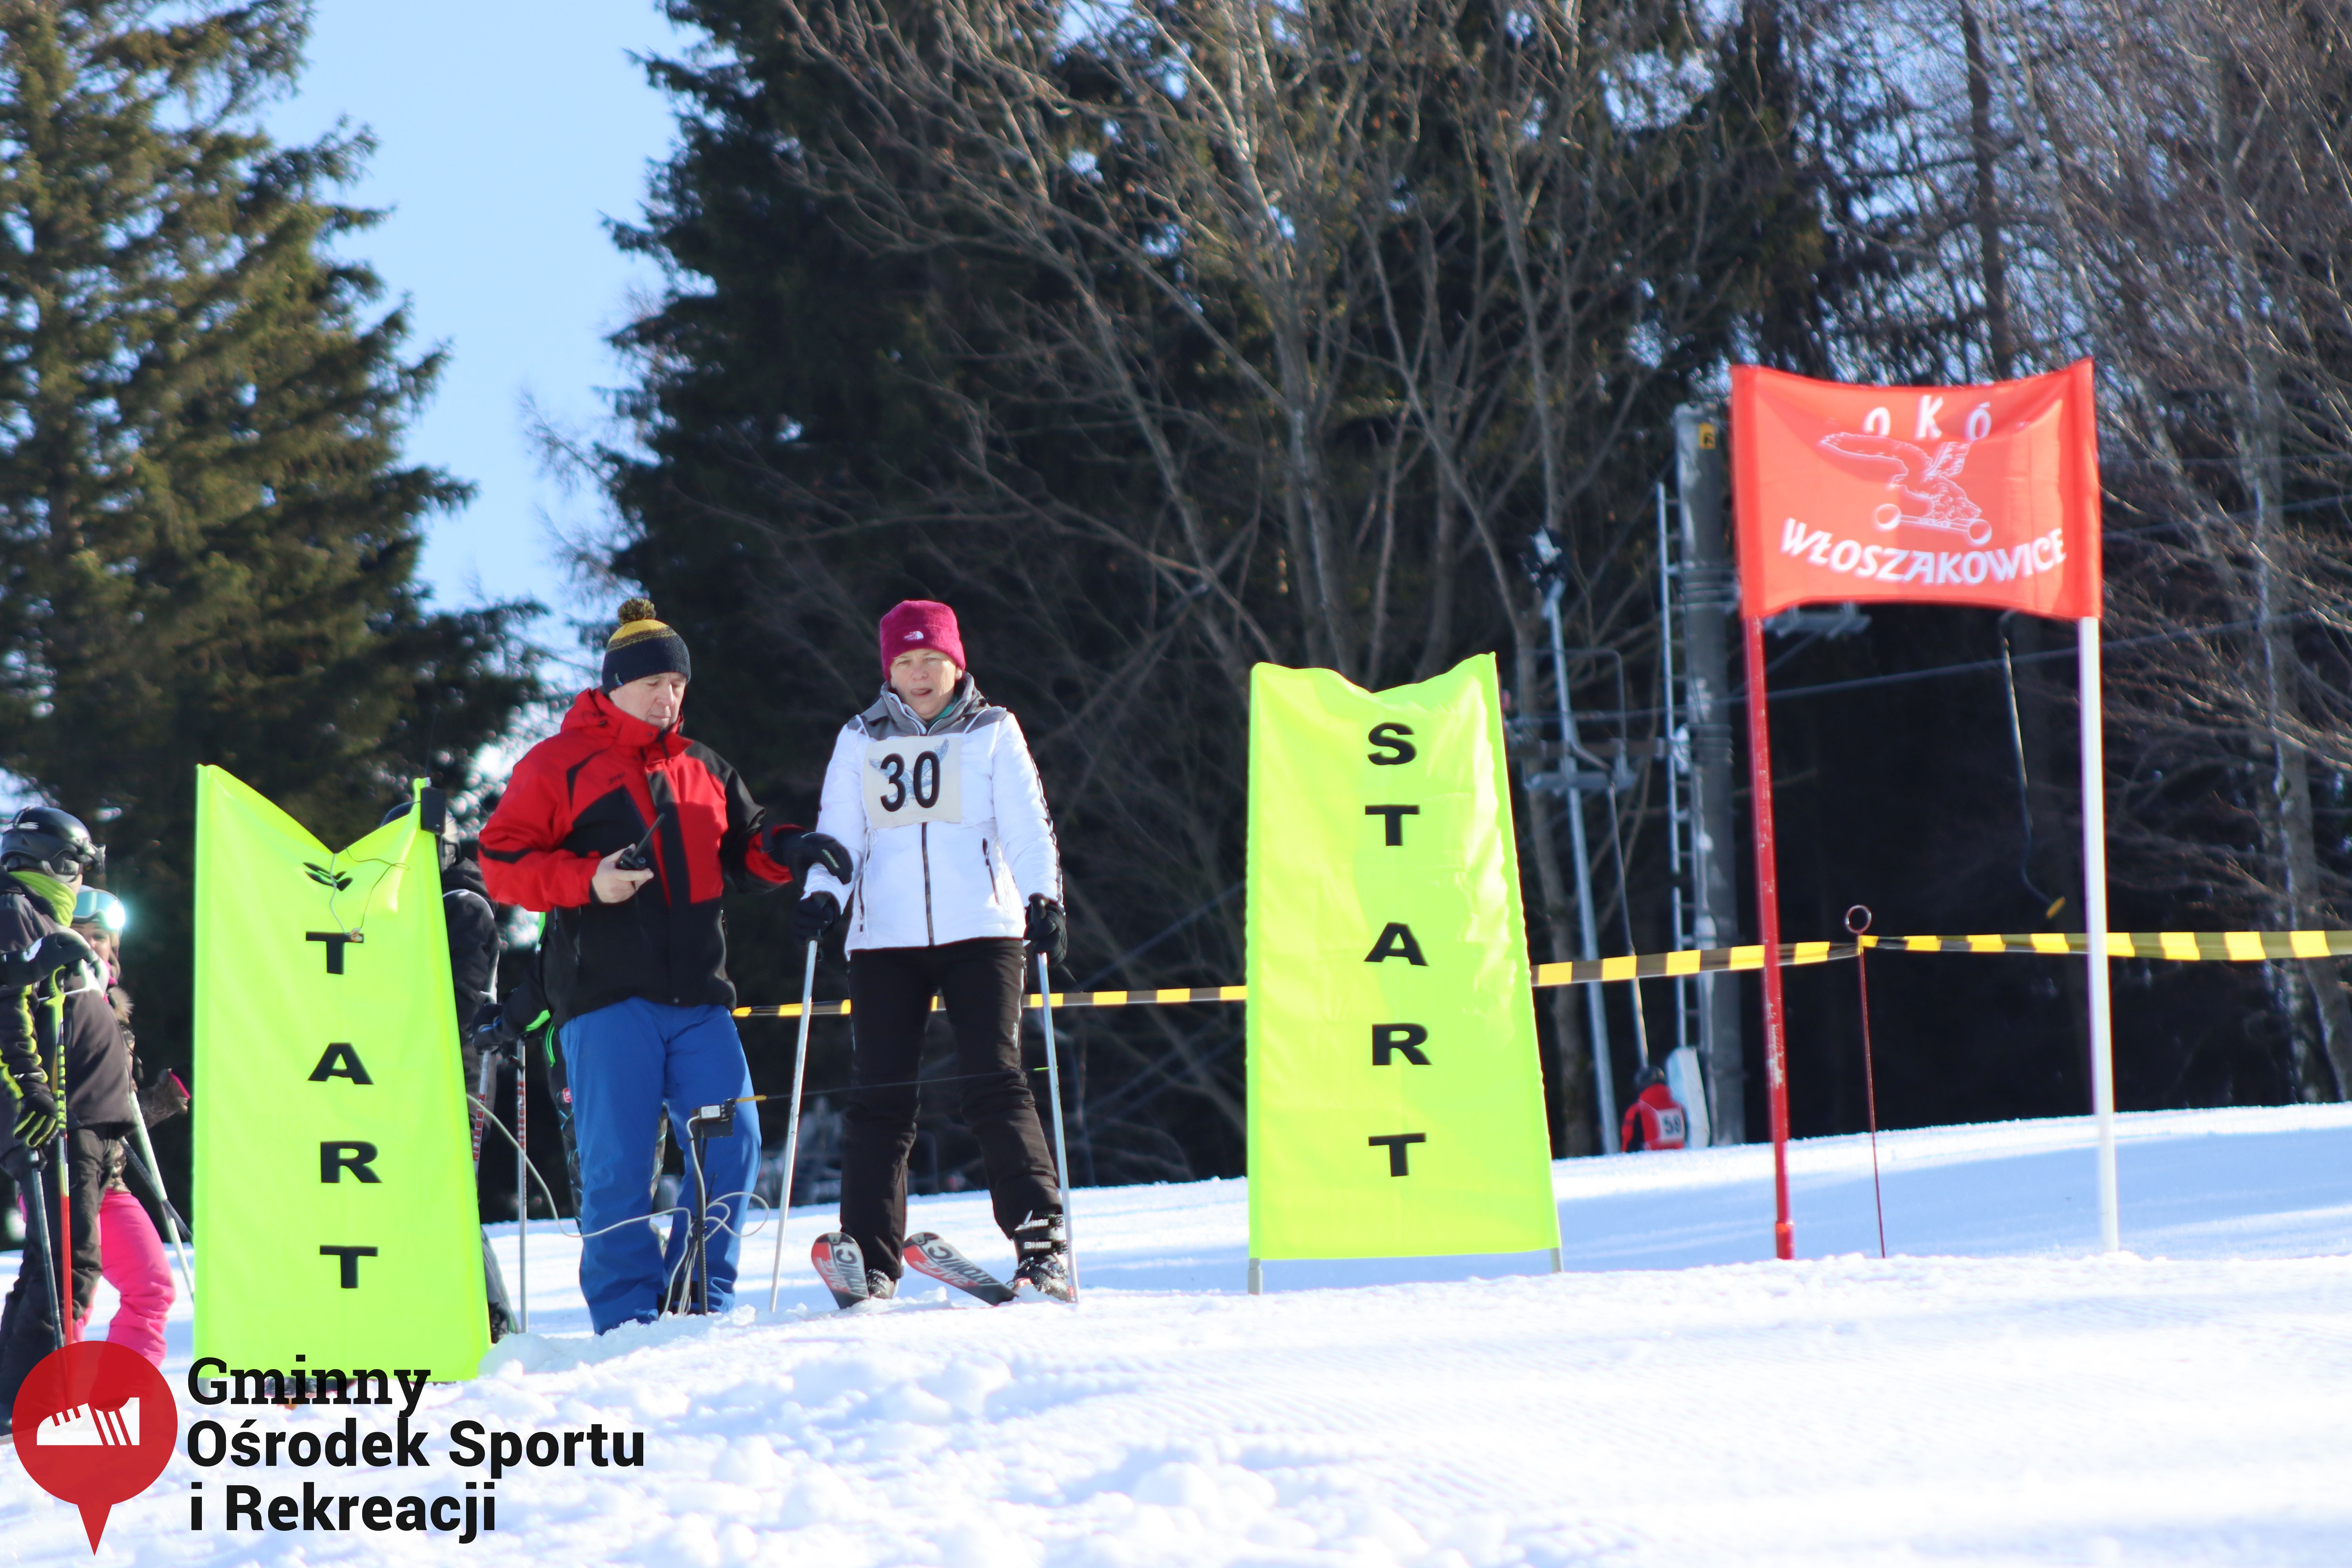 2022.02.12 - 18. Mistrzostwa Gminy Woszakowice w narciarstwie056.jpg - 1,79 MB